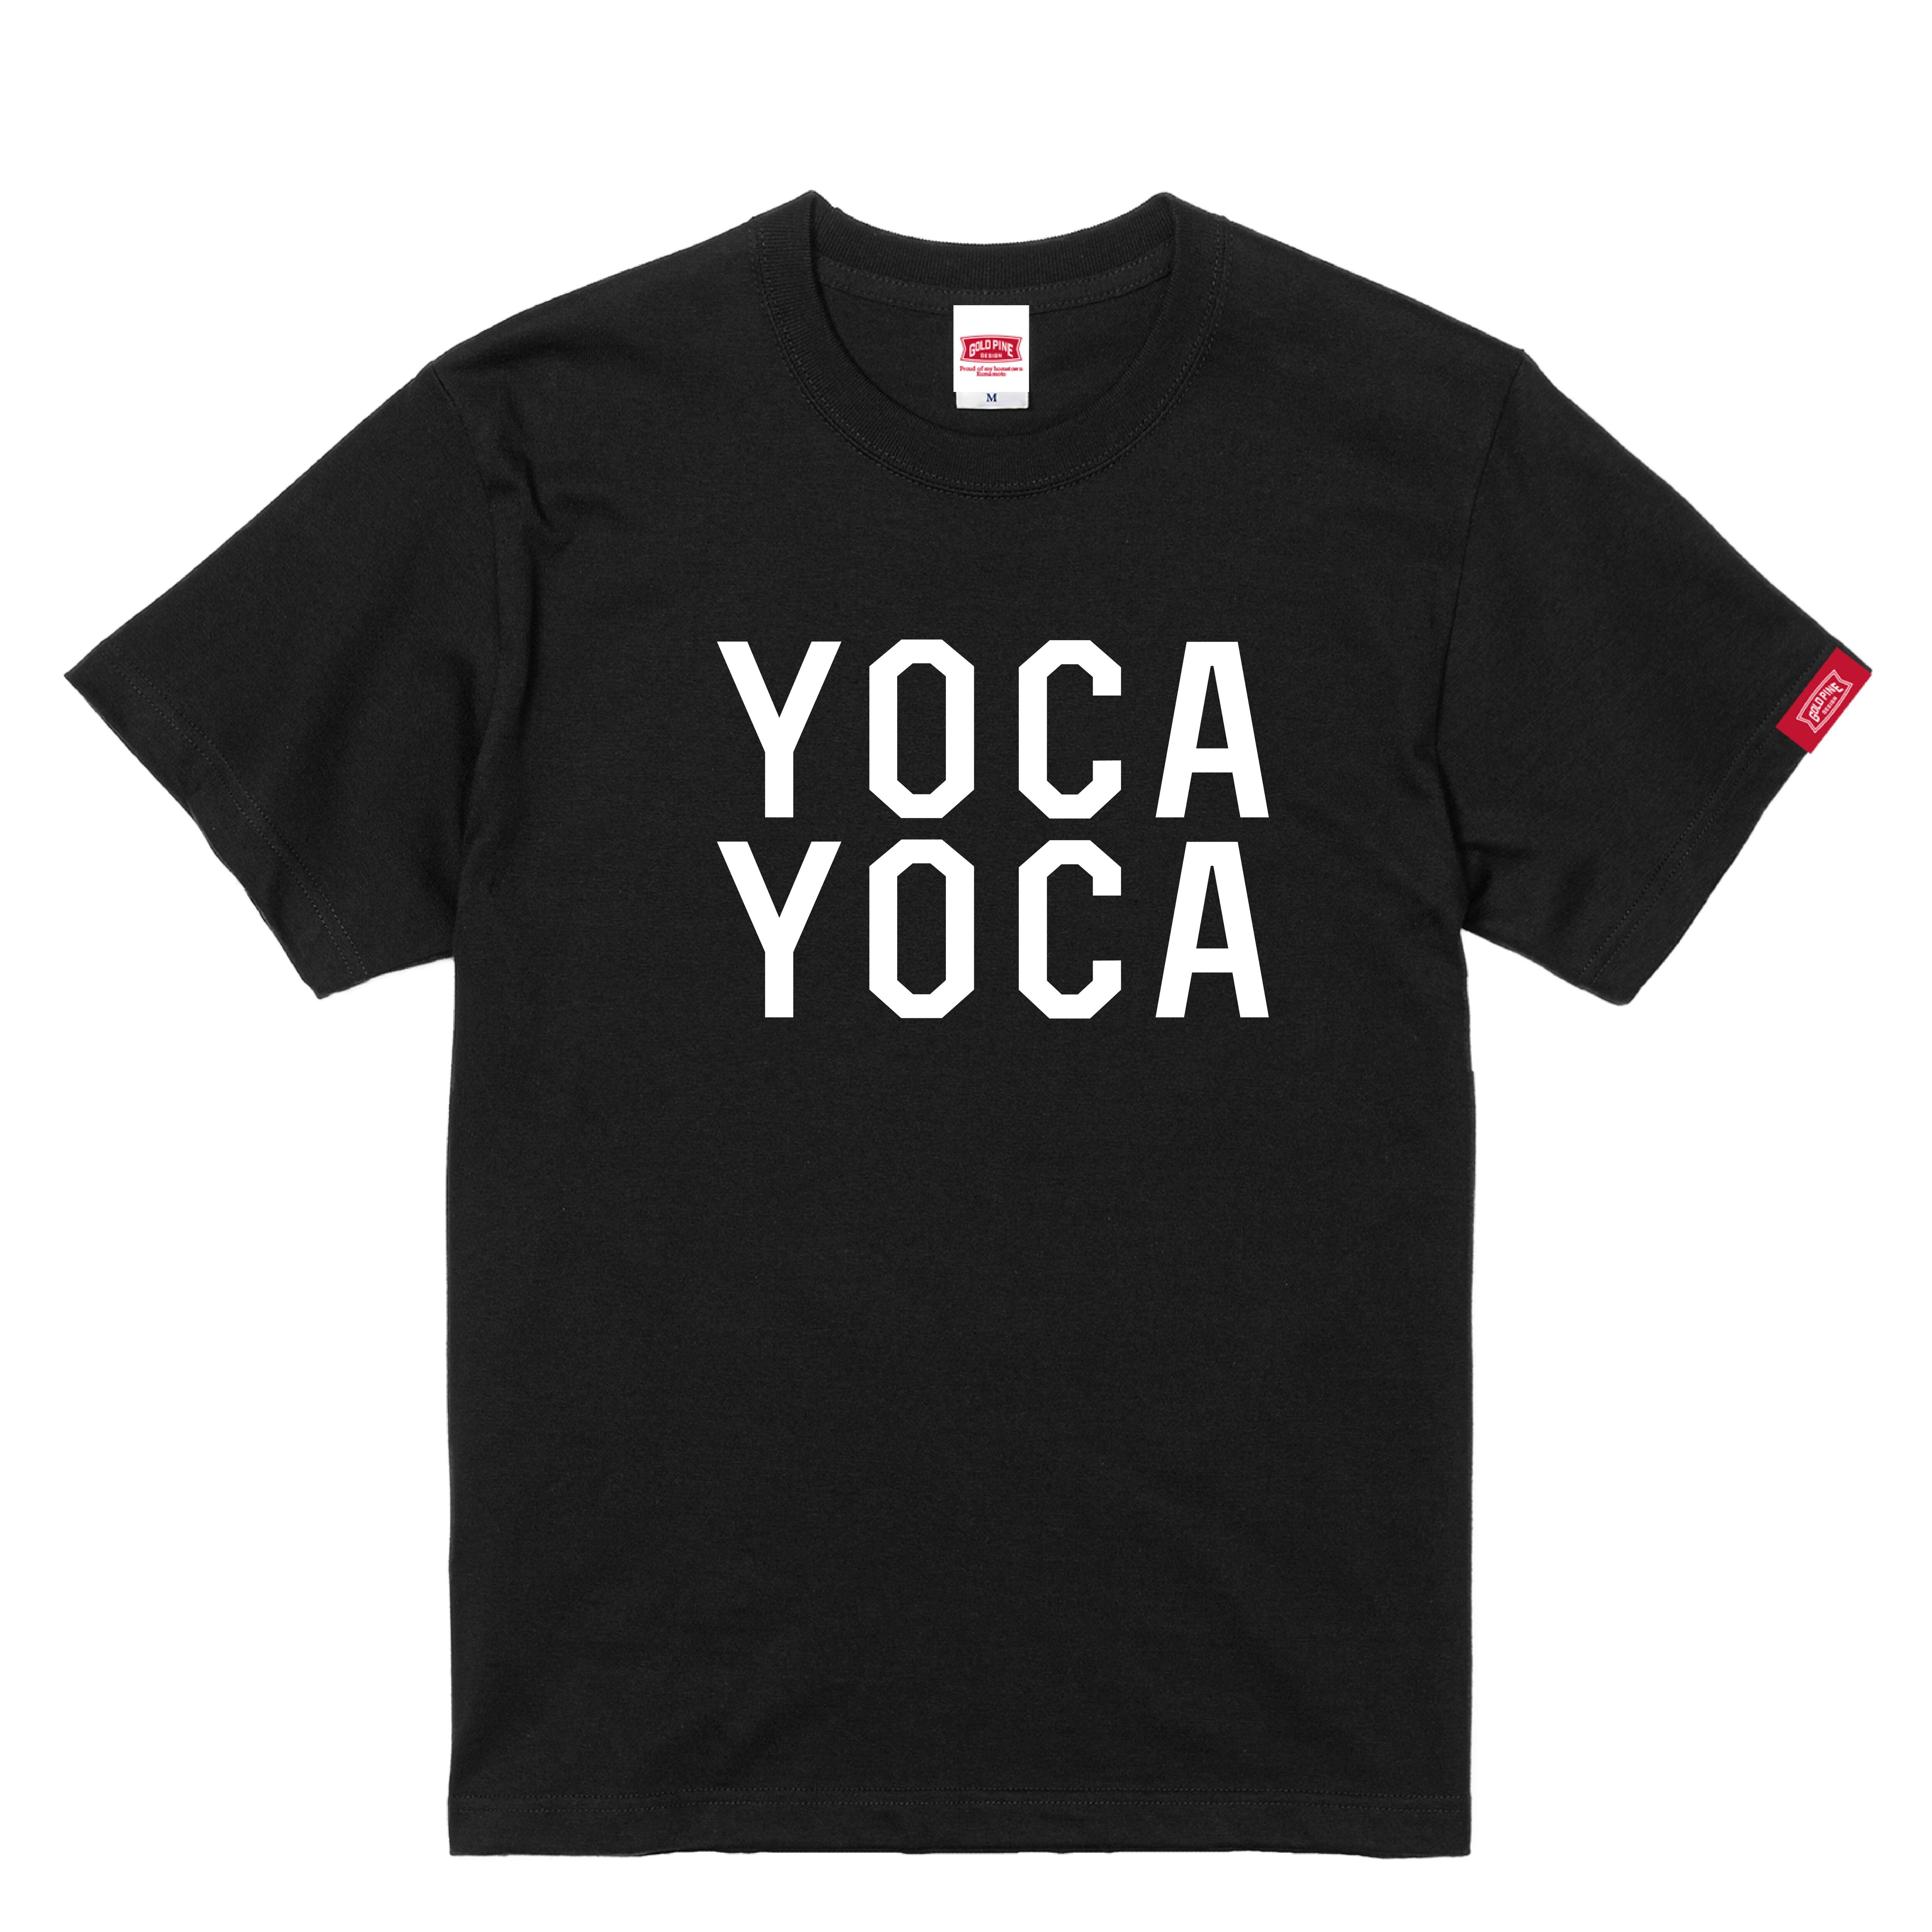 YOCAYOCA-Tshirt【Adult】Black